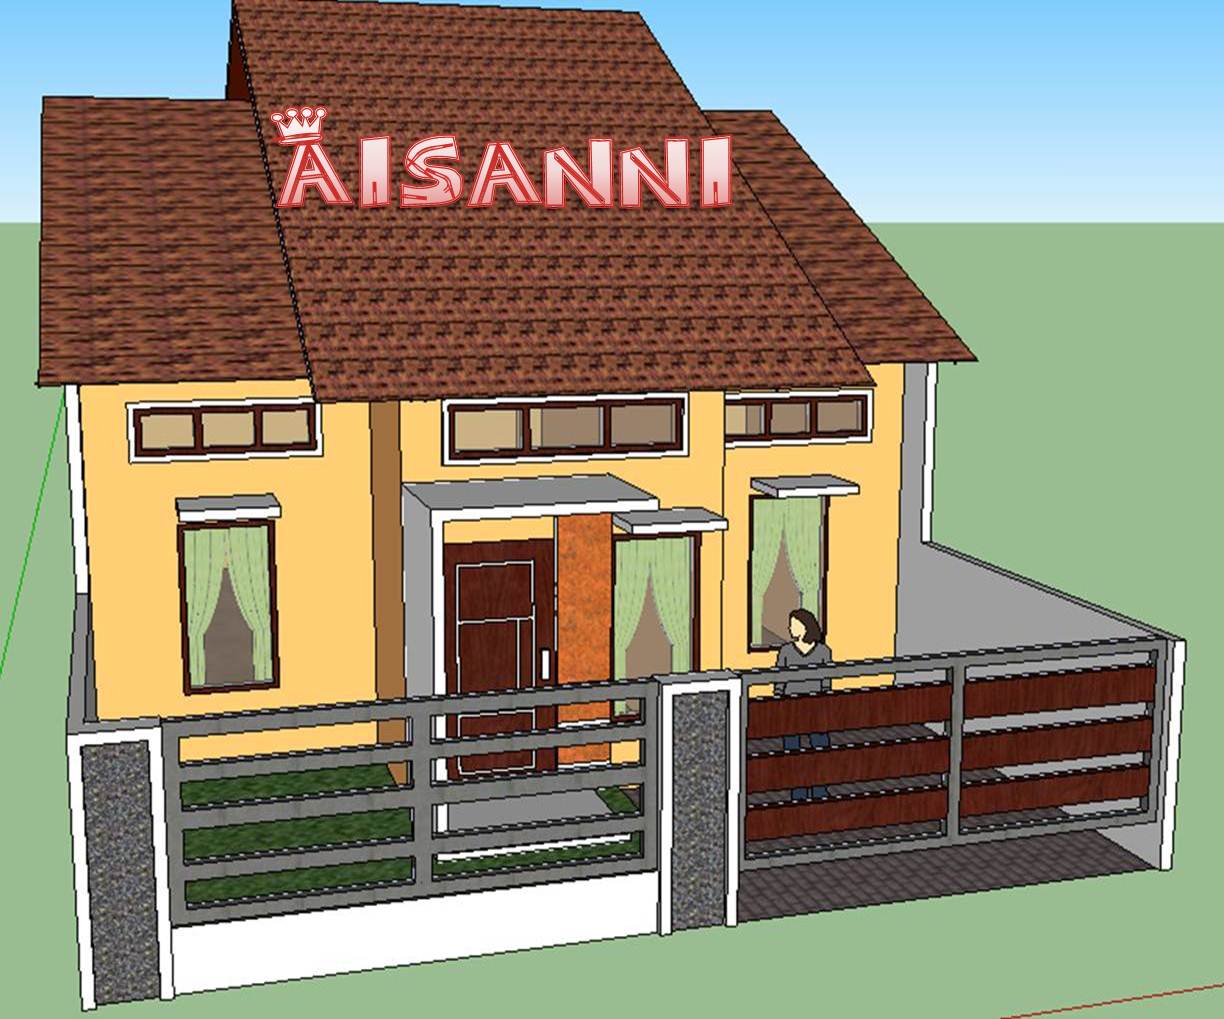 61 Desain Rumah Minimalis Google Sketchup Desain Rumah Minimalis